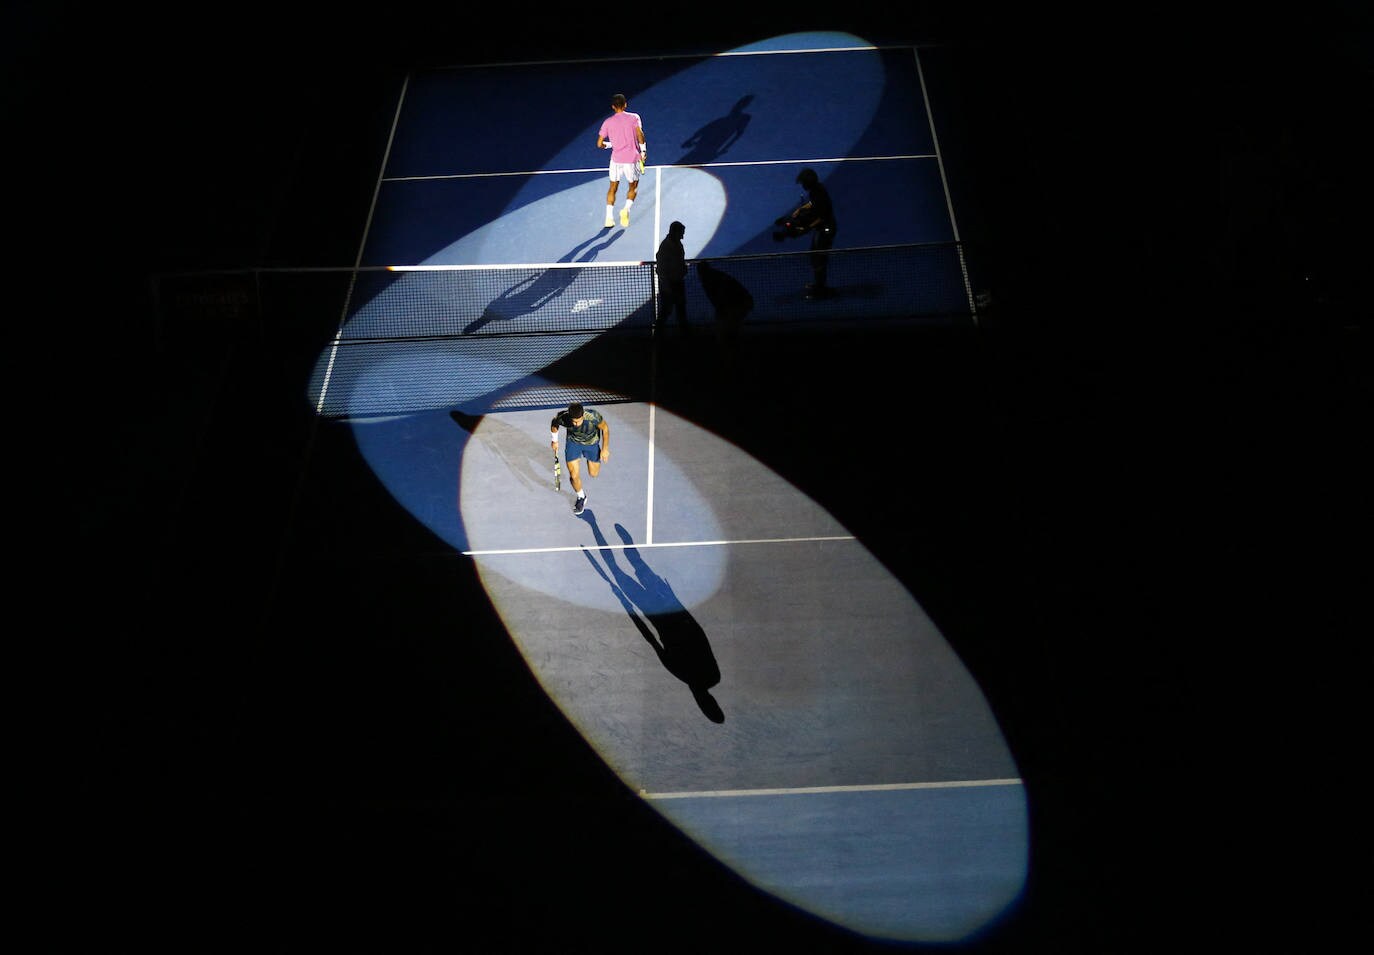 El partido entre Carlos Alcaraz y Aliassime del ATP 500 de Basilea, en imágenes